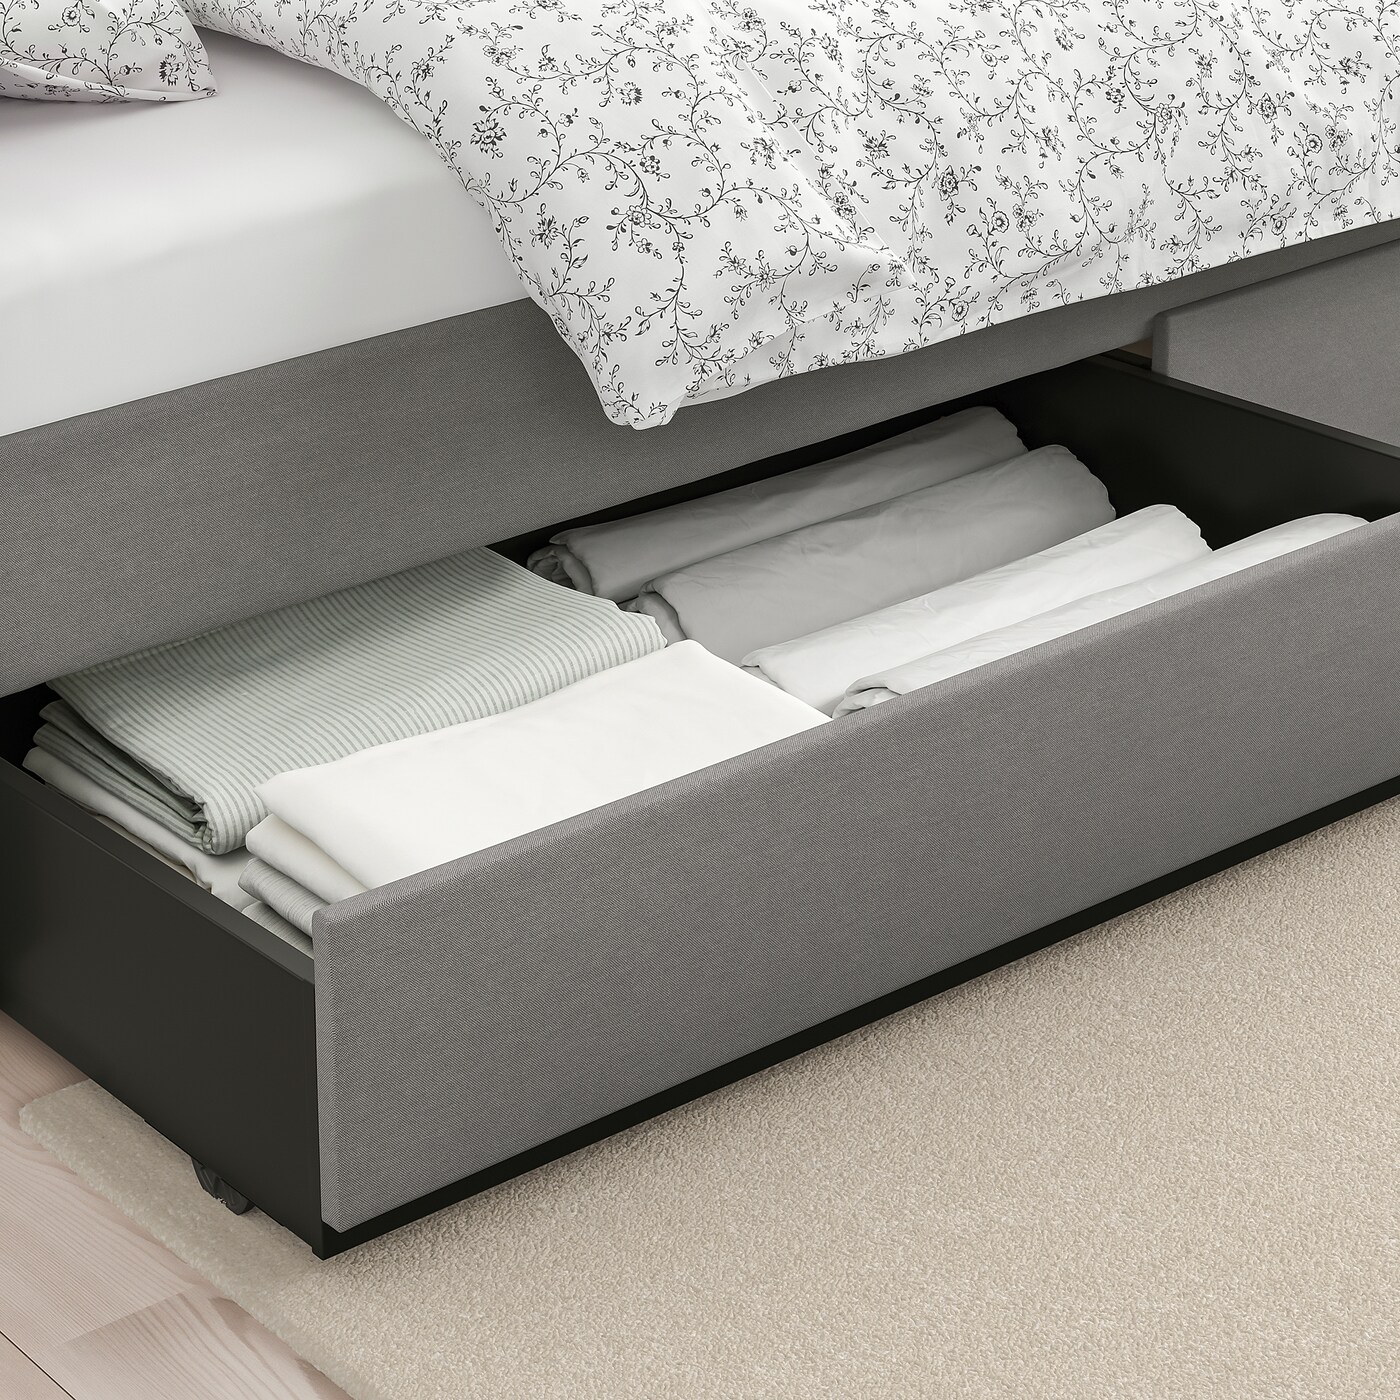 Hauga Хауга кровать с обивкой,2 кроватных ящика, Висле серый160x200 см